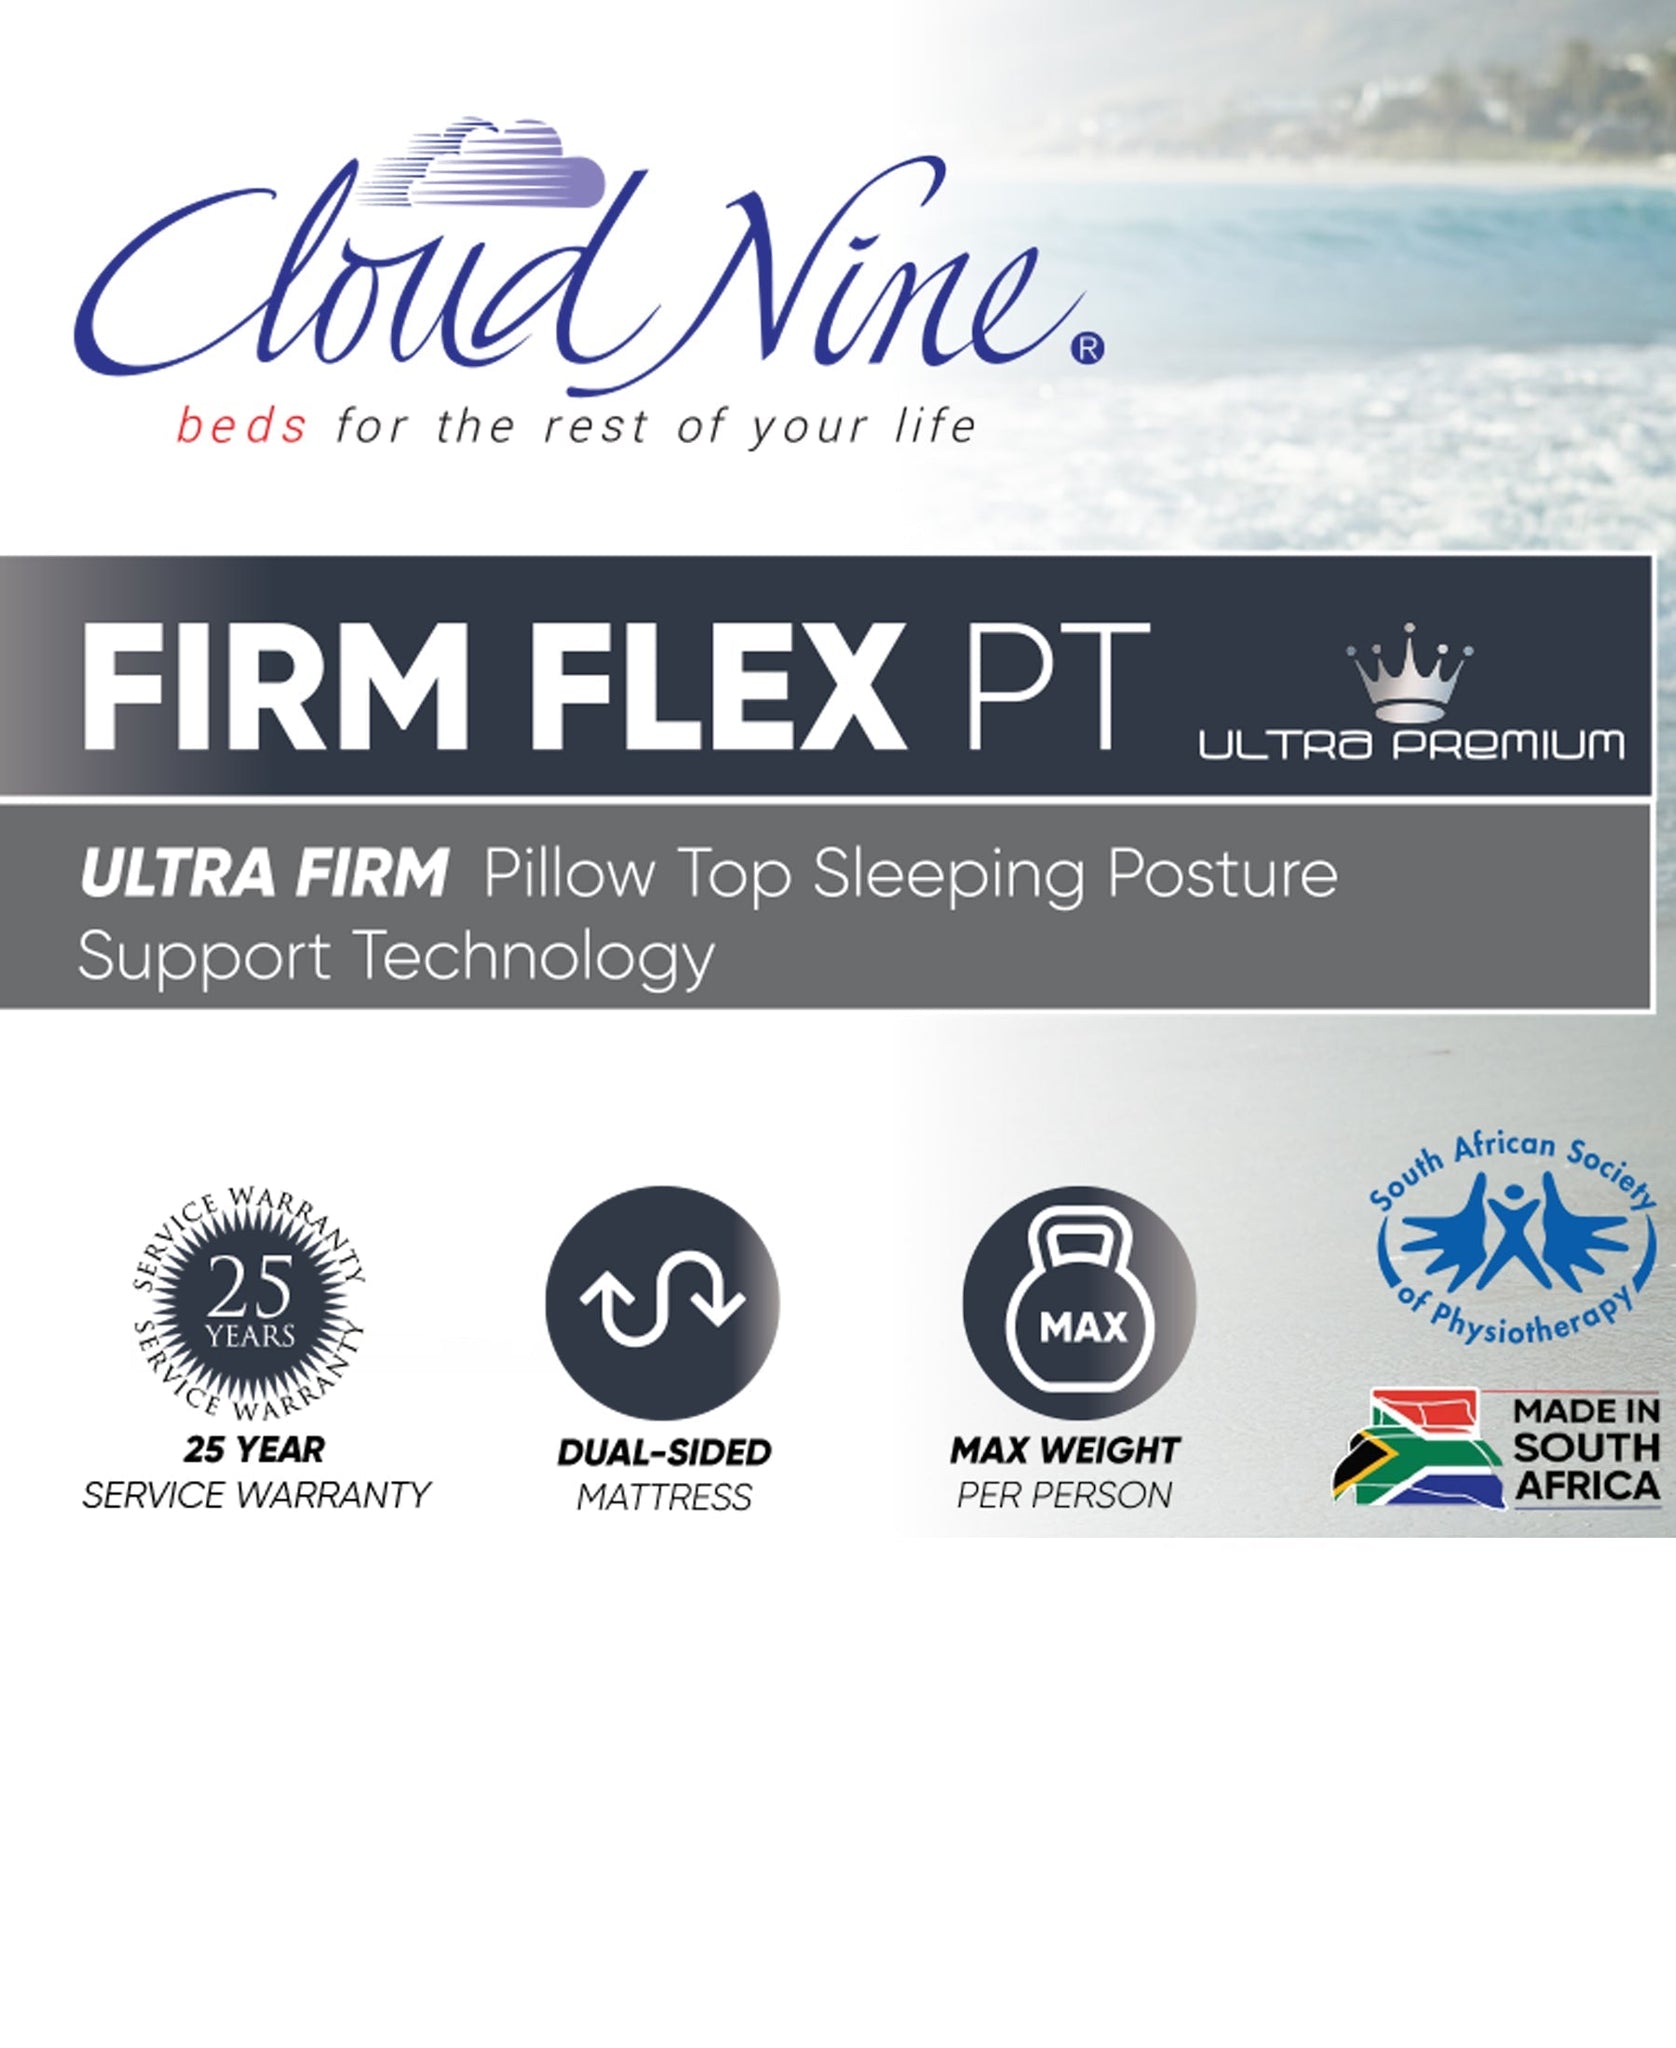 Cloud Nine Firm Flex PT Bed Queen